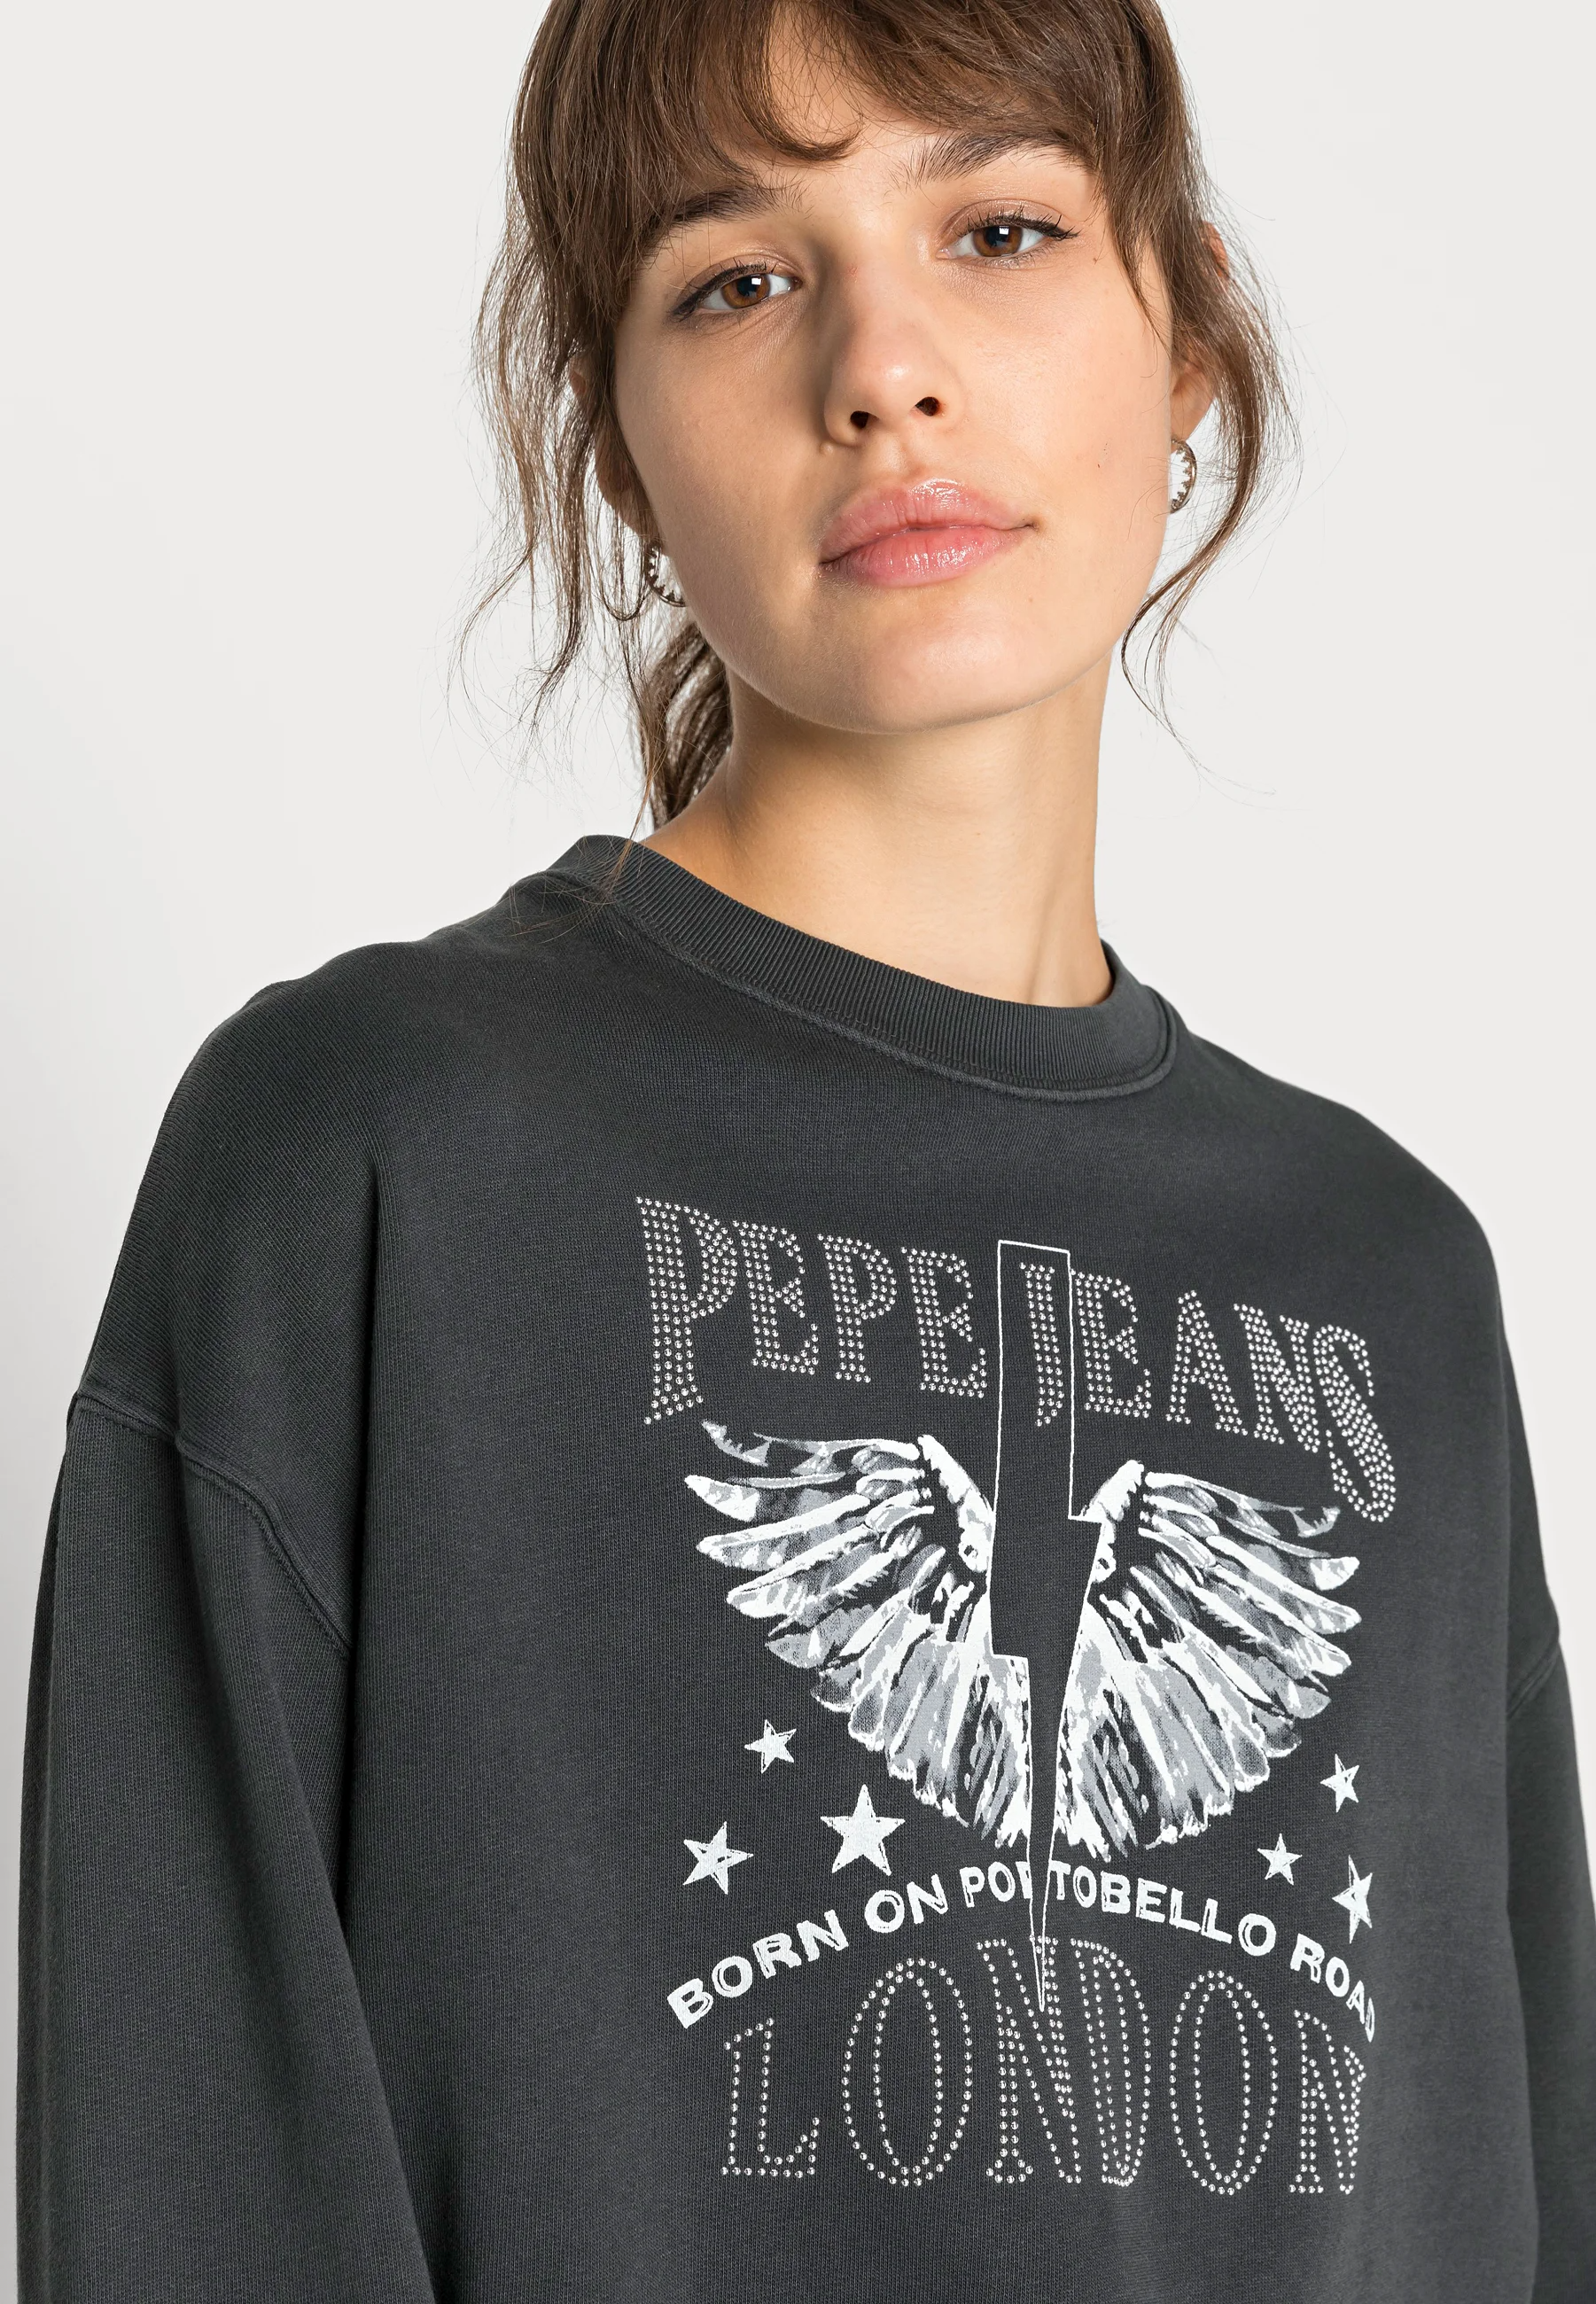 Buy Pepe Jeans CADENCE Rock Sweatshirt by Pepe Jeans